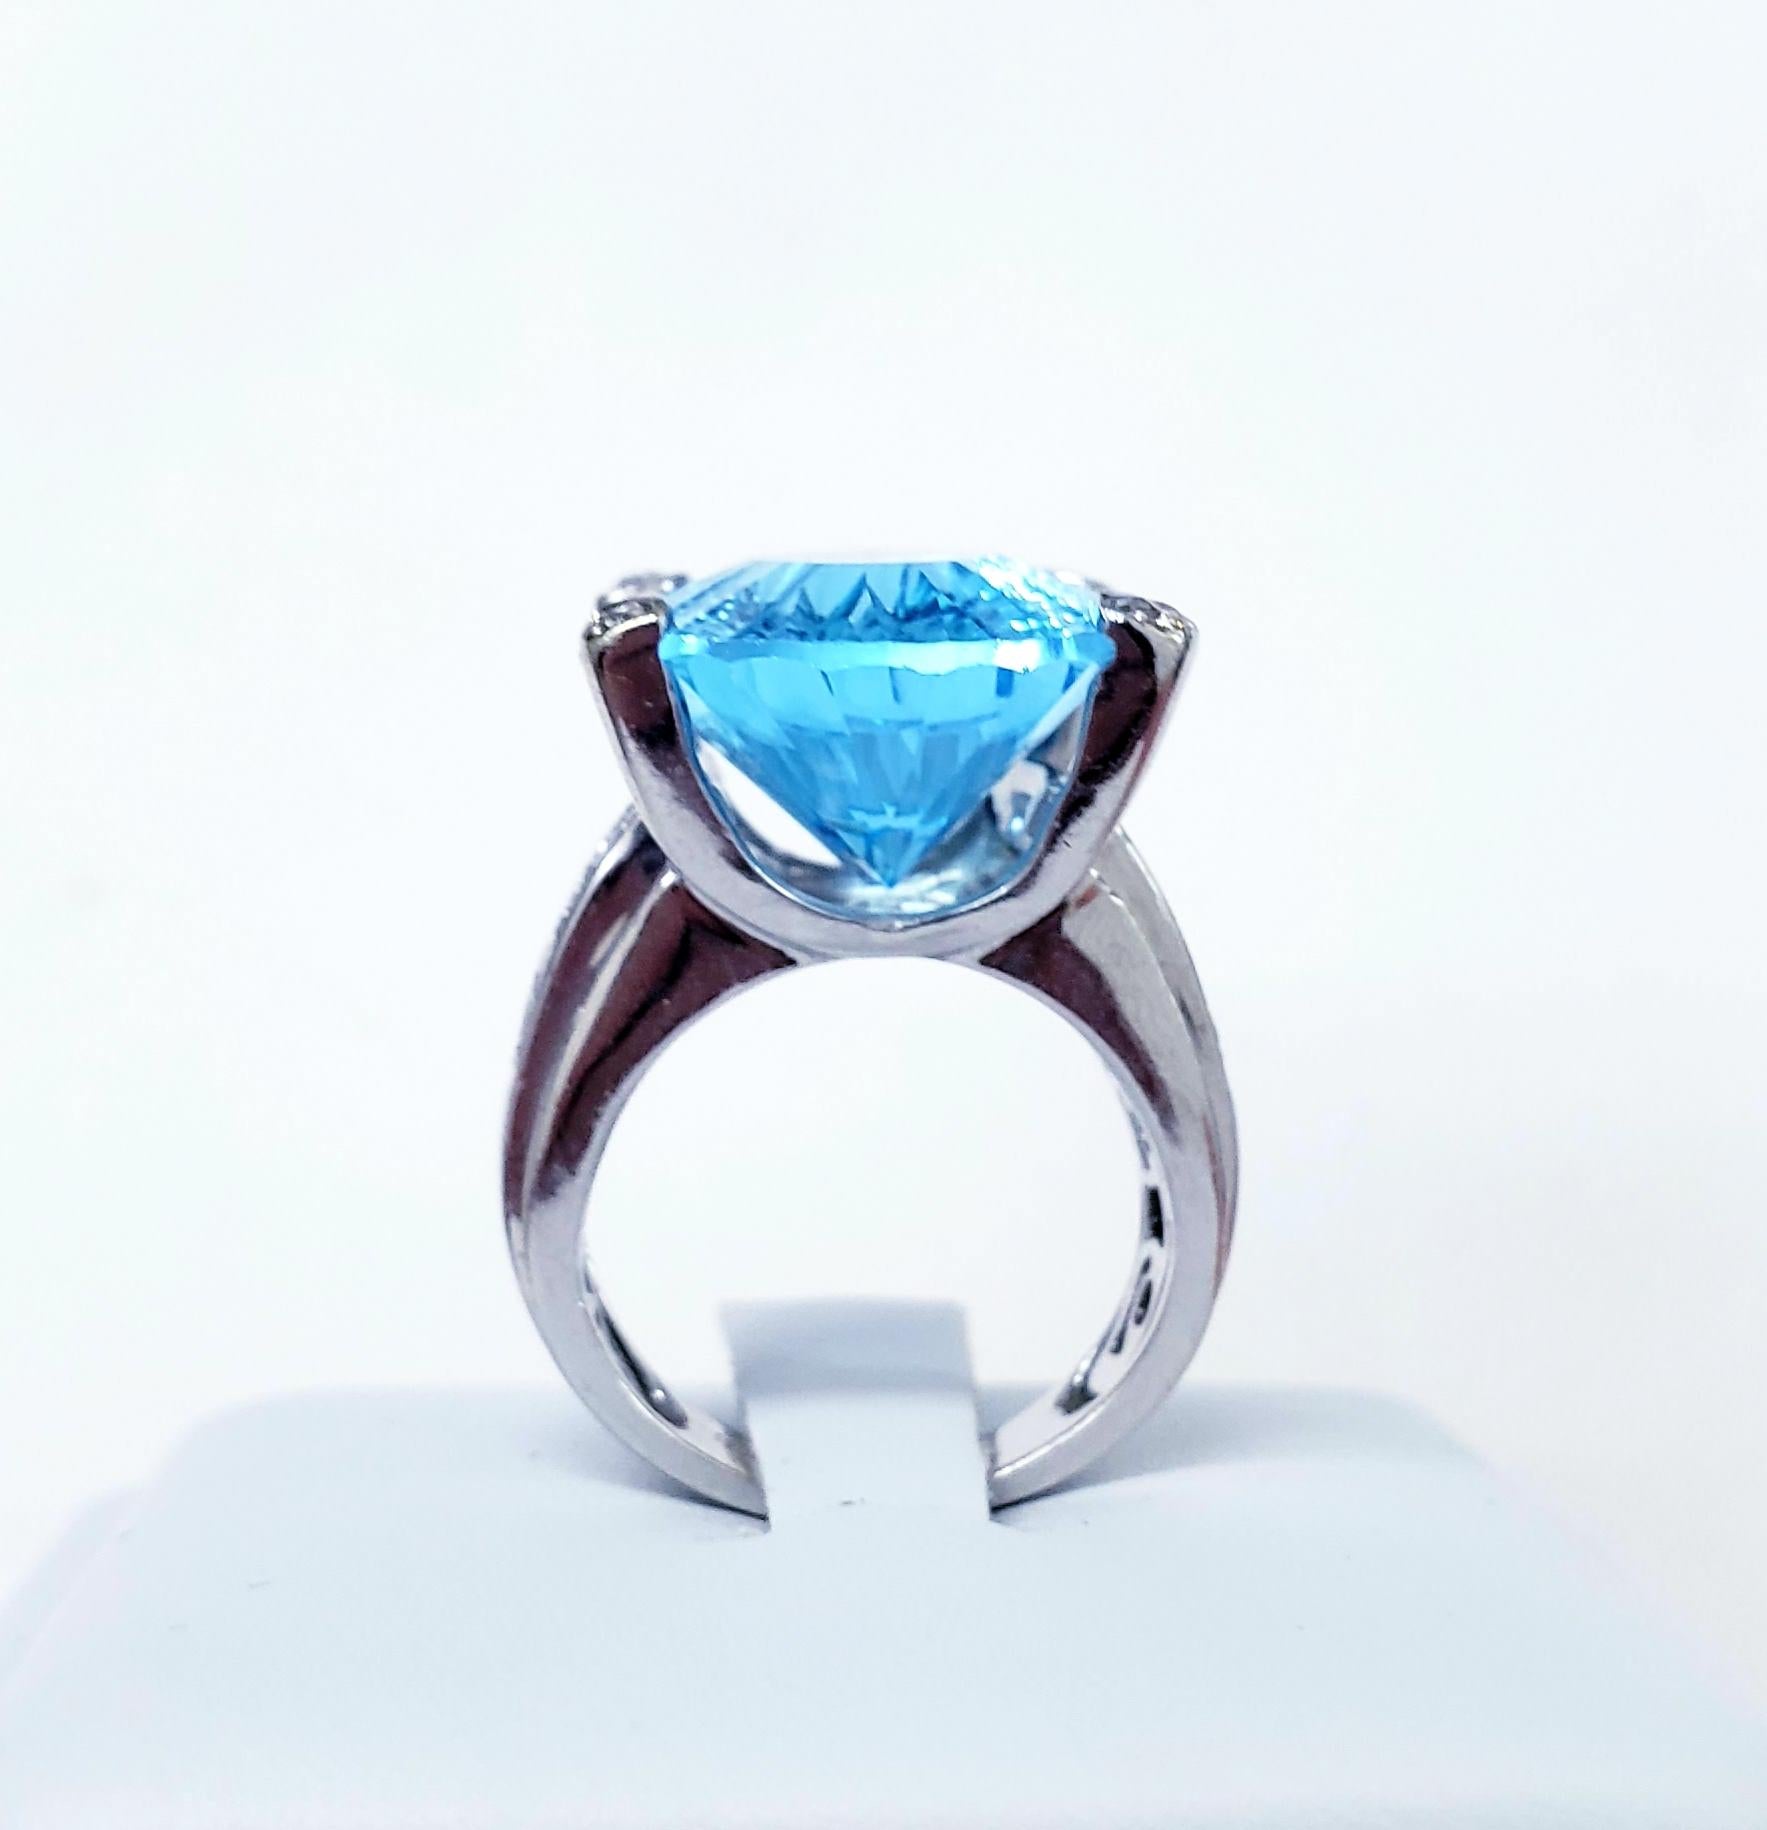 Moderne Bold Cocktail-Ring mit einem massiven 20mm X 15mm (ca. 17 Karat) oval Blue Topaz Edelstein und 0,50tcw in runden Diamanten handgefertigt in 18k Weißgold. 
Größe 5
Ungefähr 2000er Jahre 
